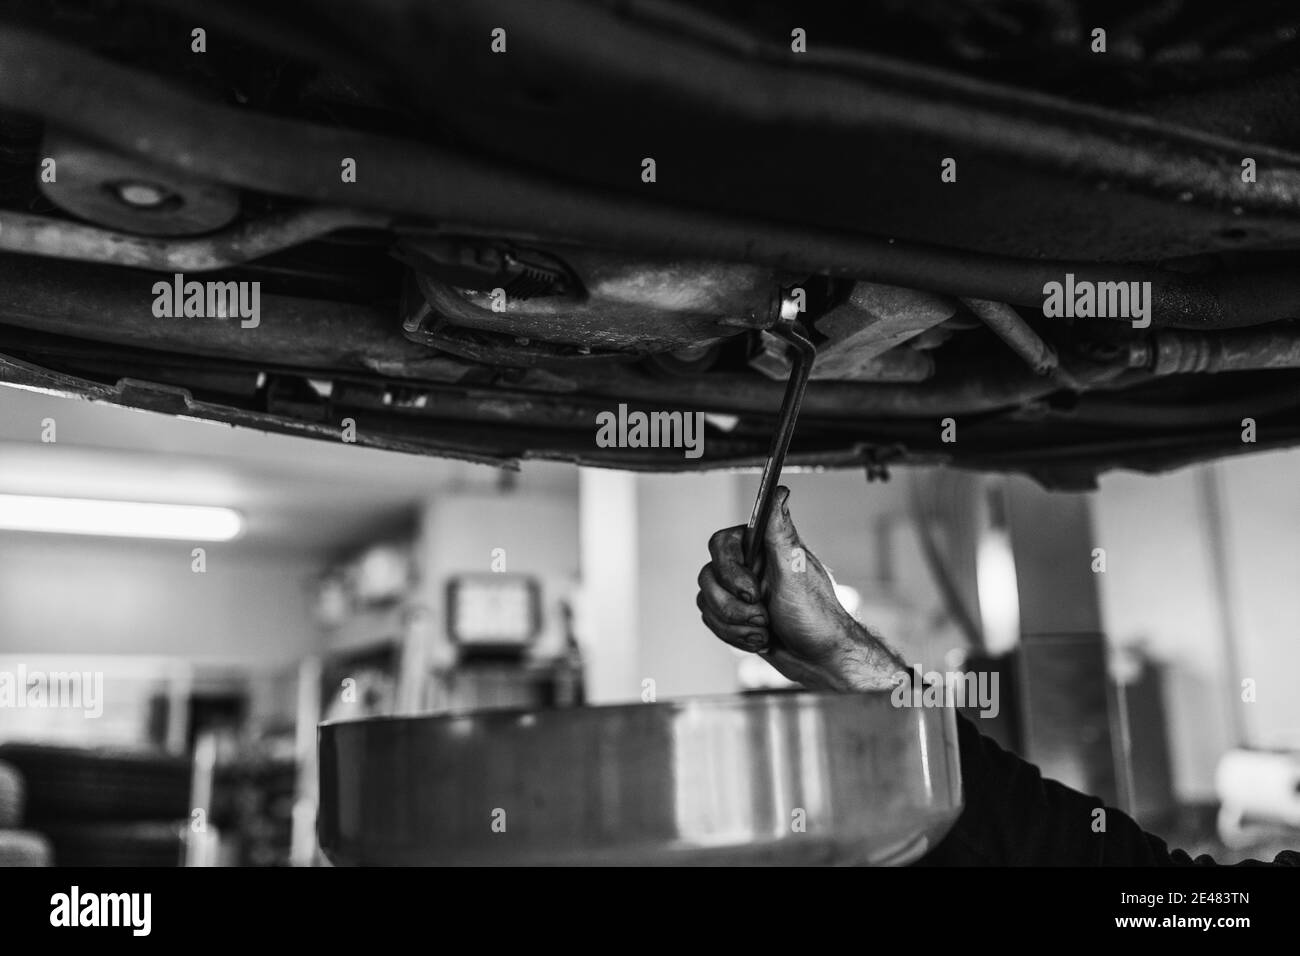 Mains d'un mécanicien changer l'huile de la voiture. Noir et blanc. Mécanique automobile concept Banque D'Images